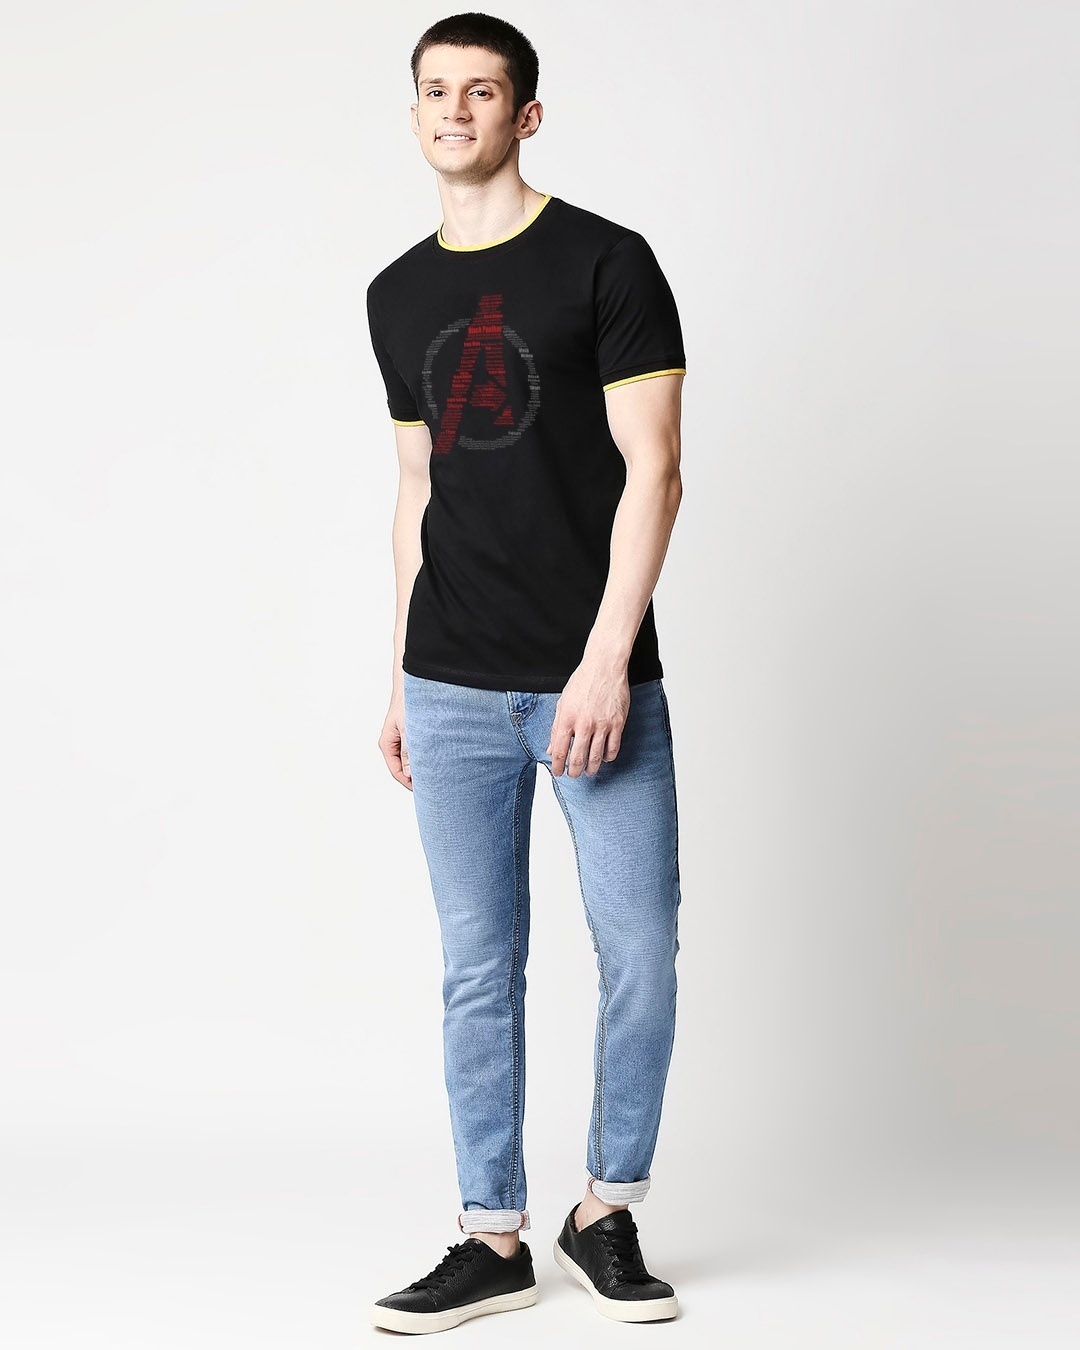 Shop Avengers All Stars (AVL) Round Neck Varsity T-Shirt-Design